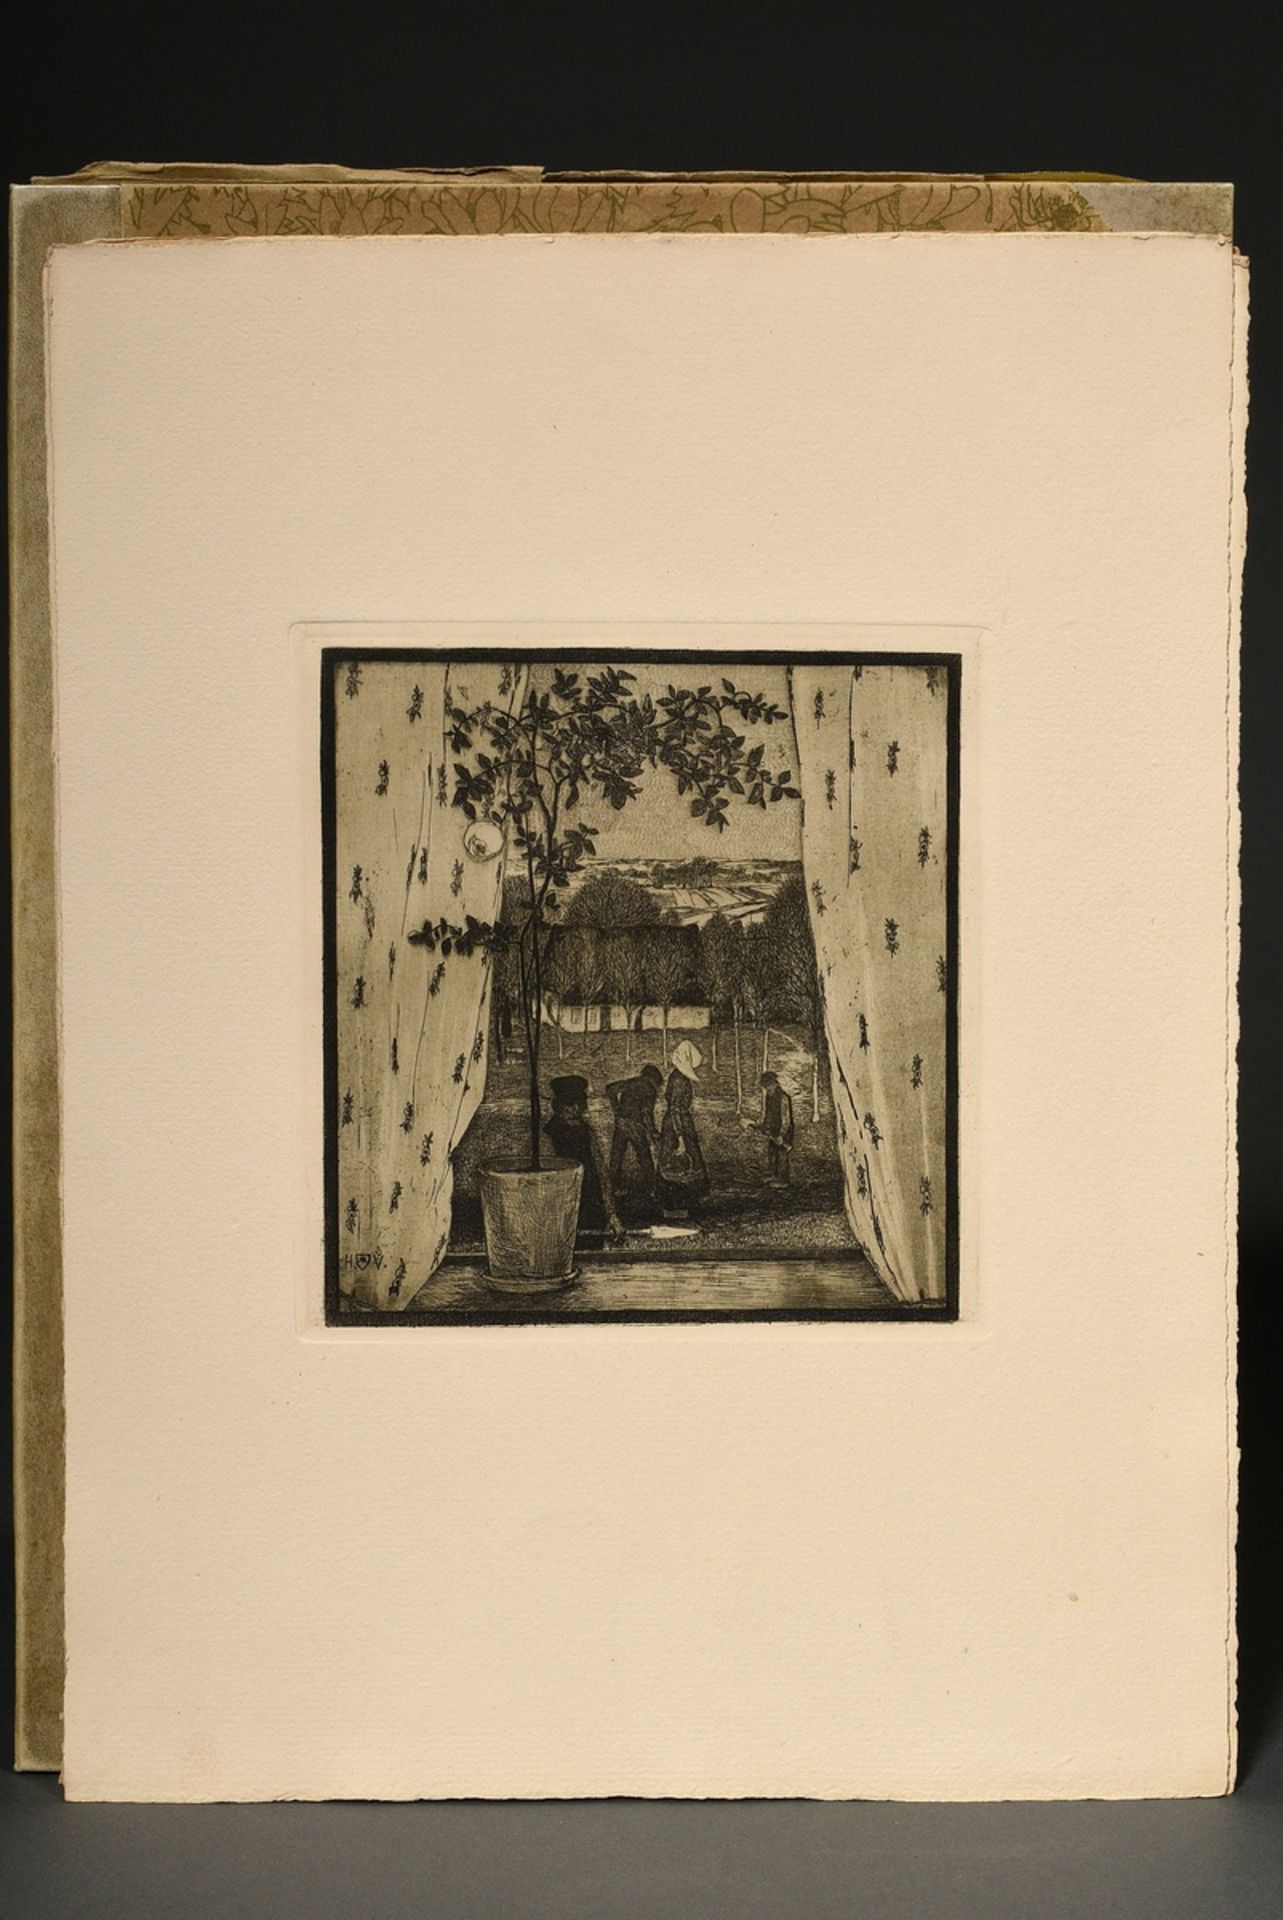 Vogeler, Heinrich (1872-1942) "An den Frühling" 1899/1901, portfolio with 10 etchings and prelimina - Image 18 of 25